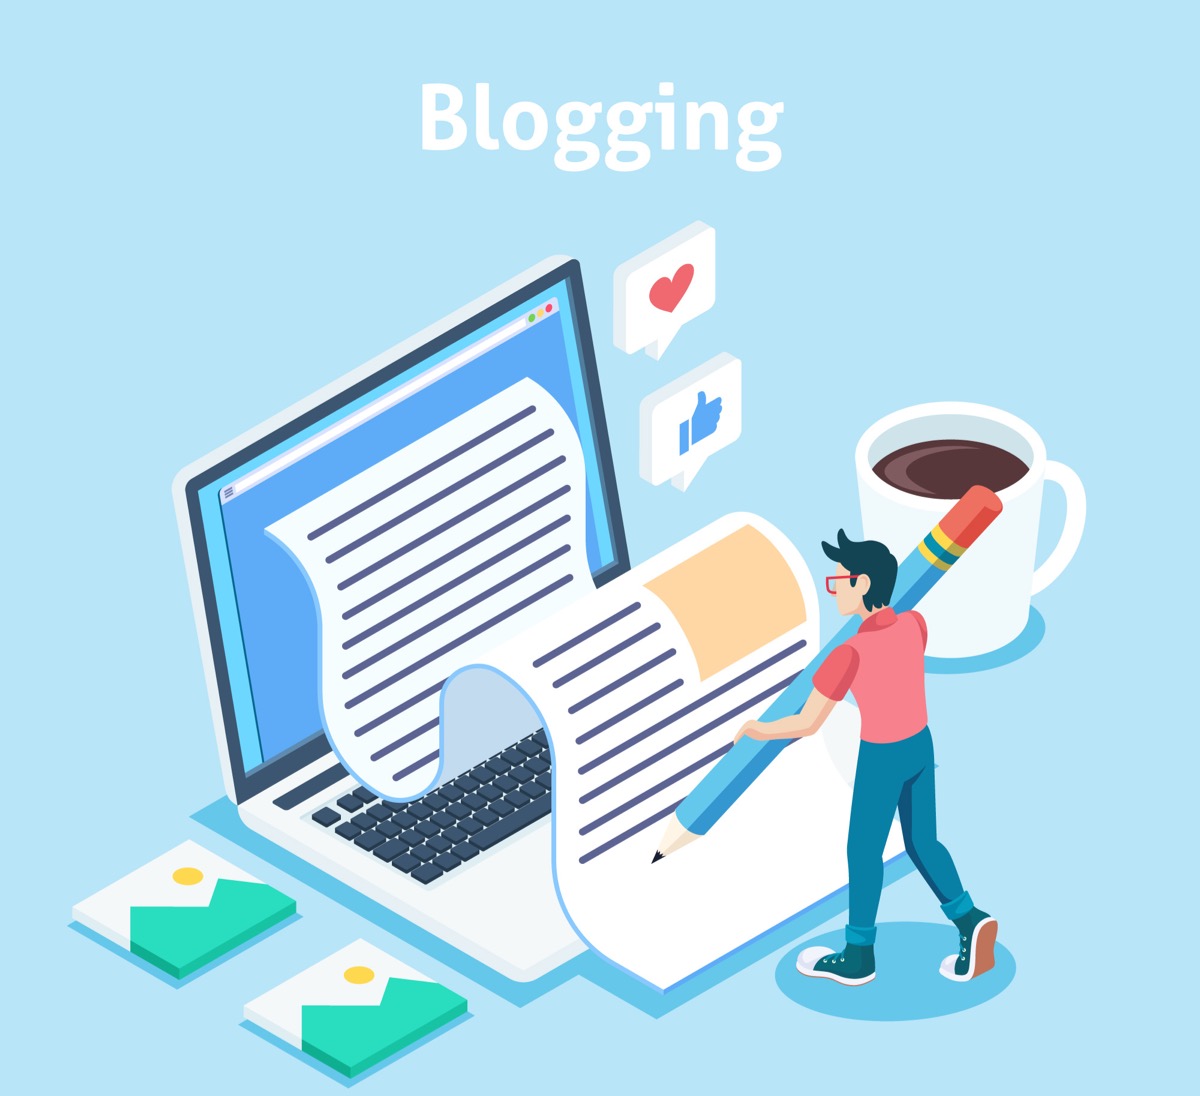 وبلاگ چیست و چگونه وبلاگ نویسی را شروع کنیم؟ (آموزش کامل)